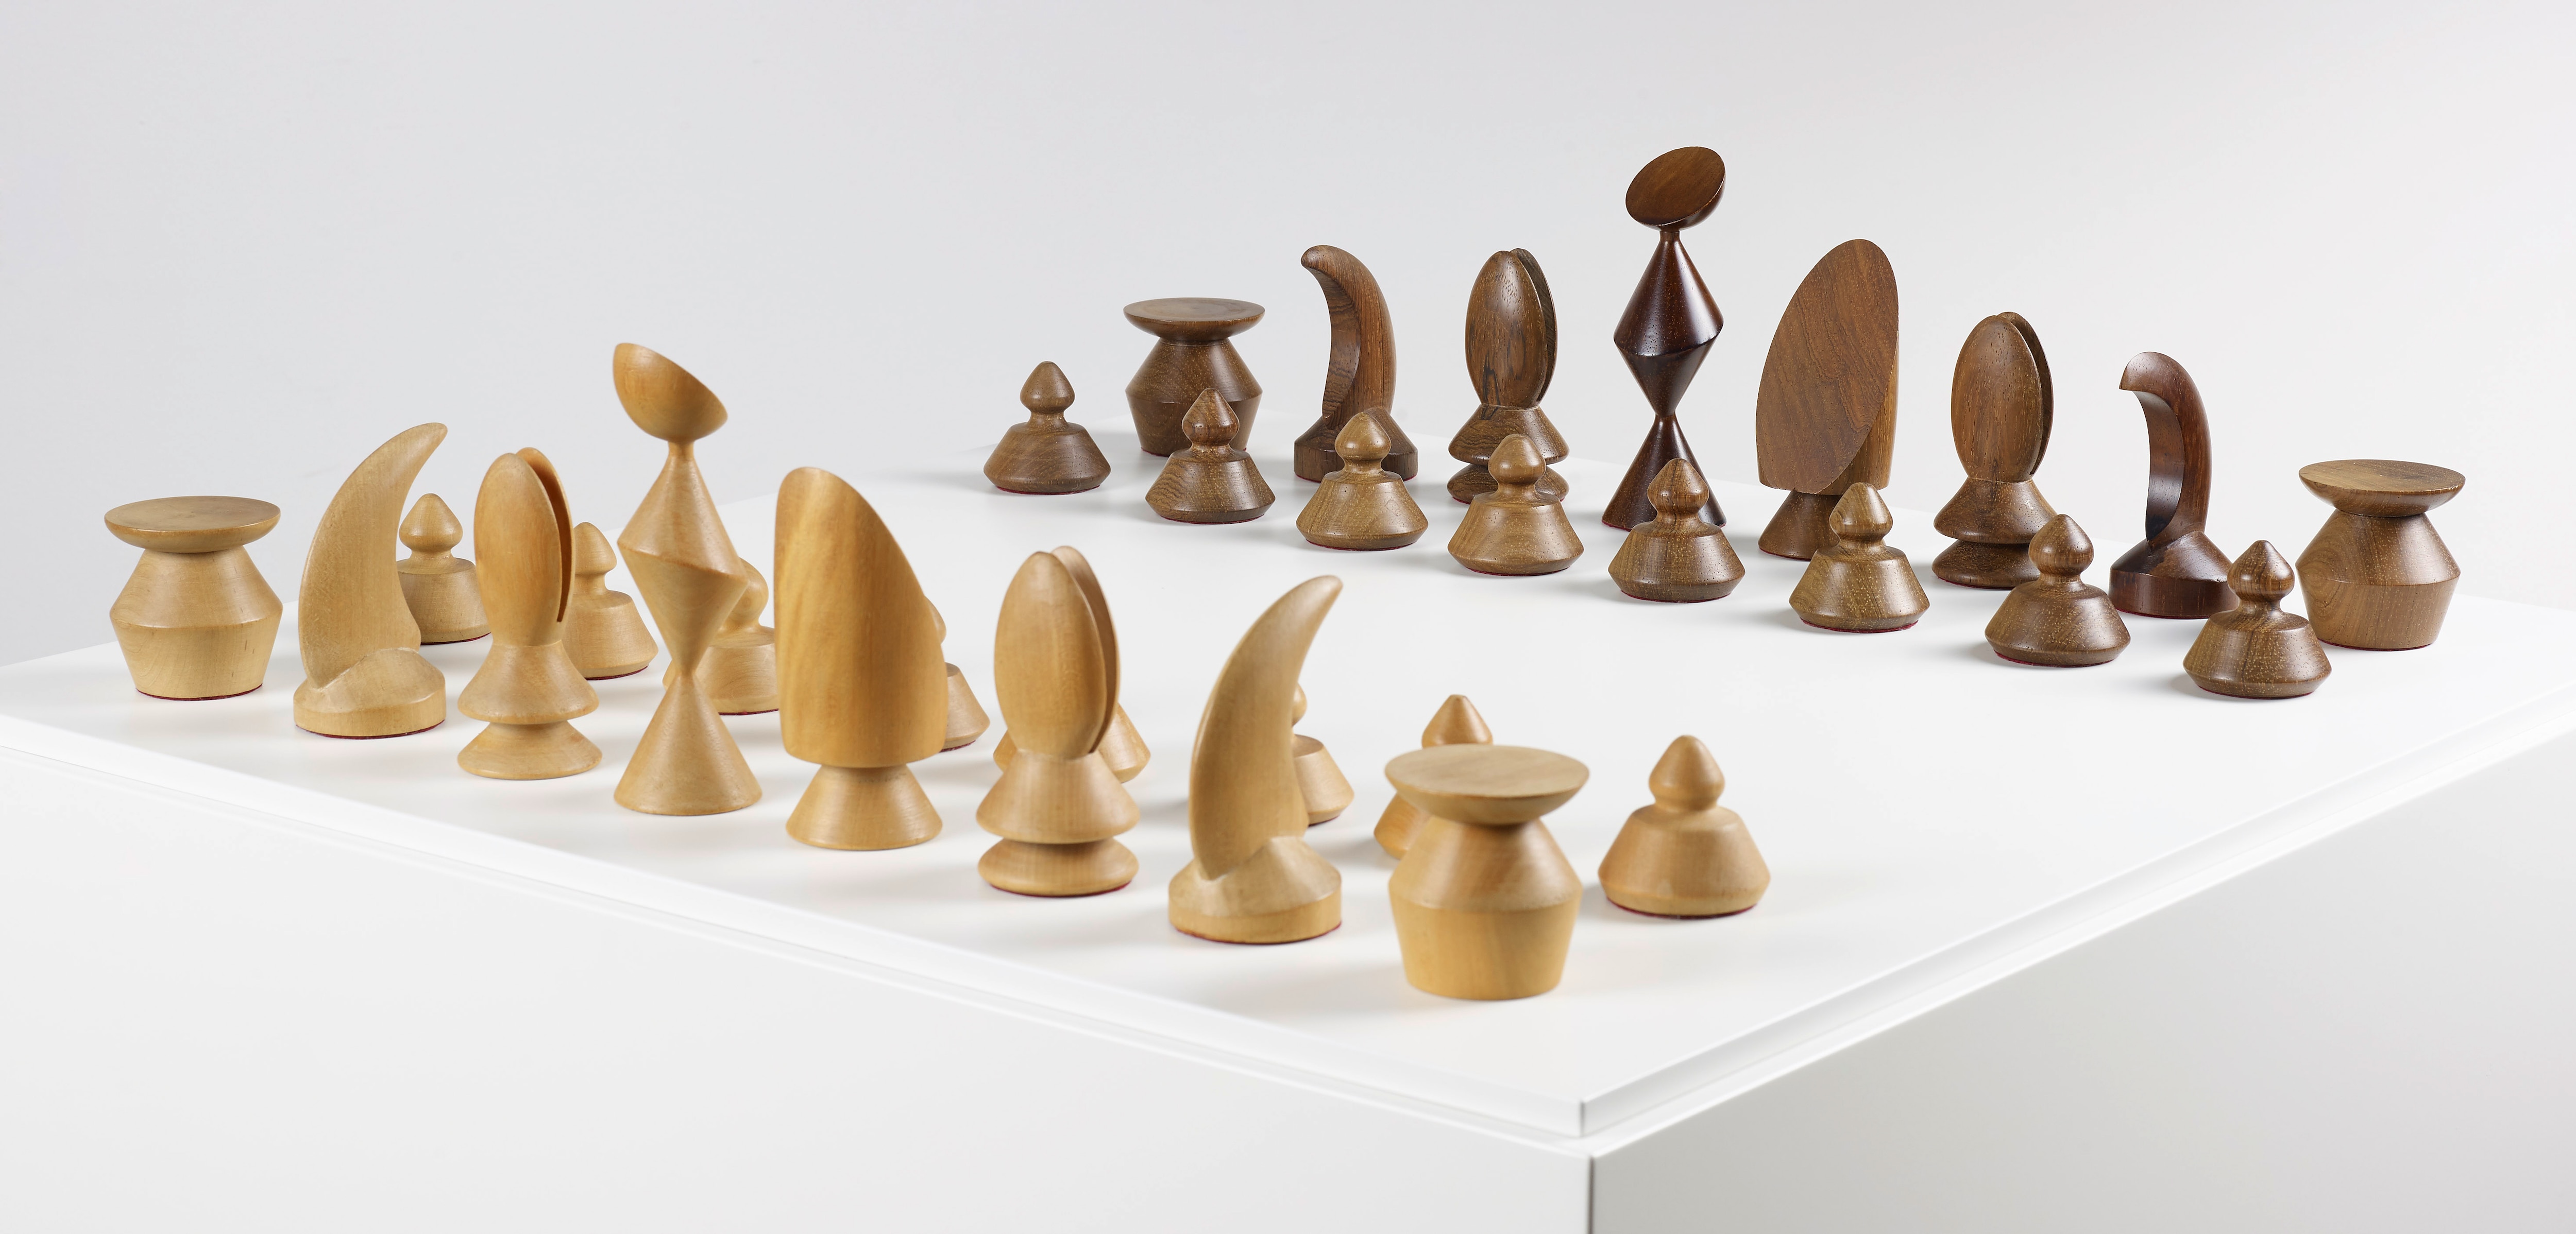 Imagen del Juego de ajedrez diseñado por de Max Ernst que se exhibe en la exposición patrocinada por la Fundación BBVA en la Fundación Miró